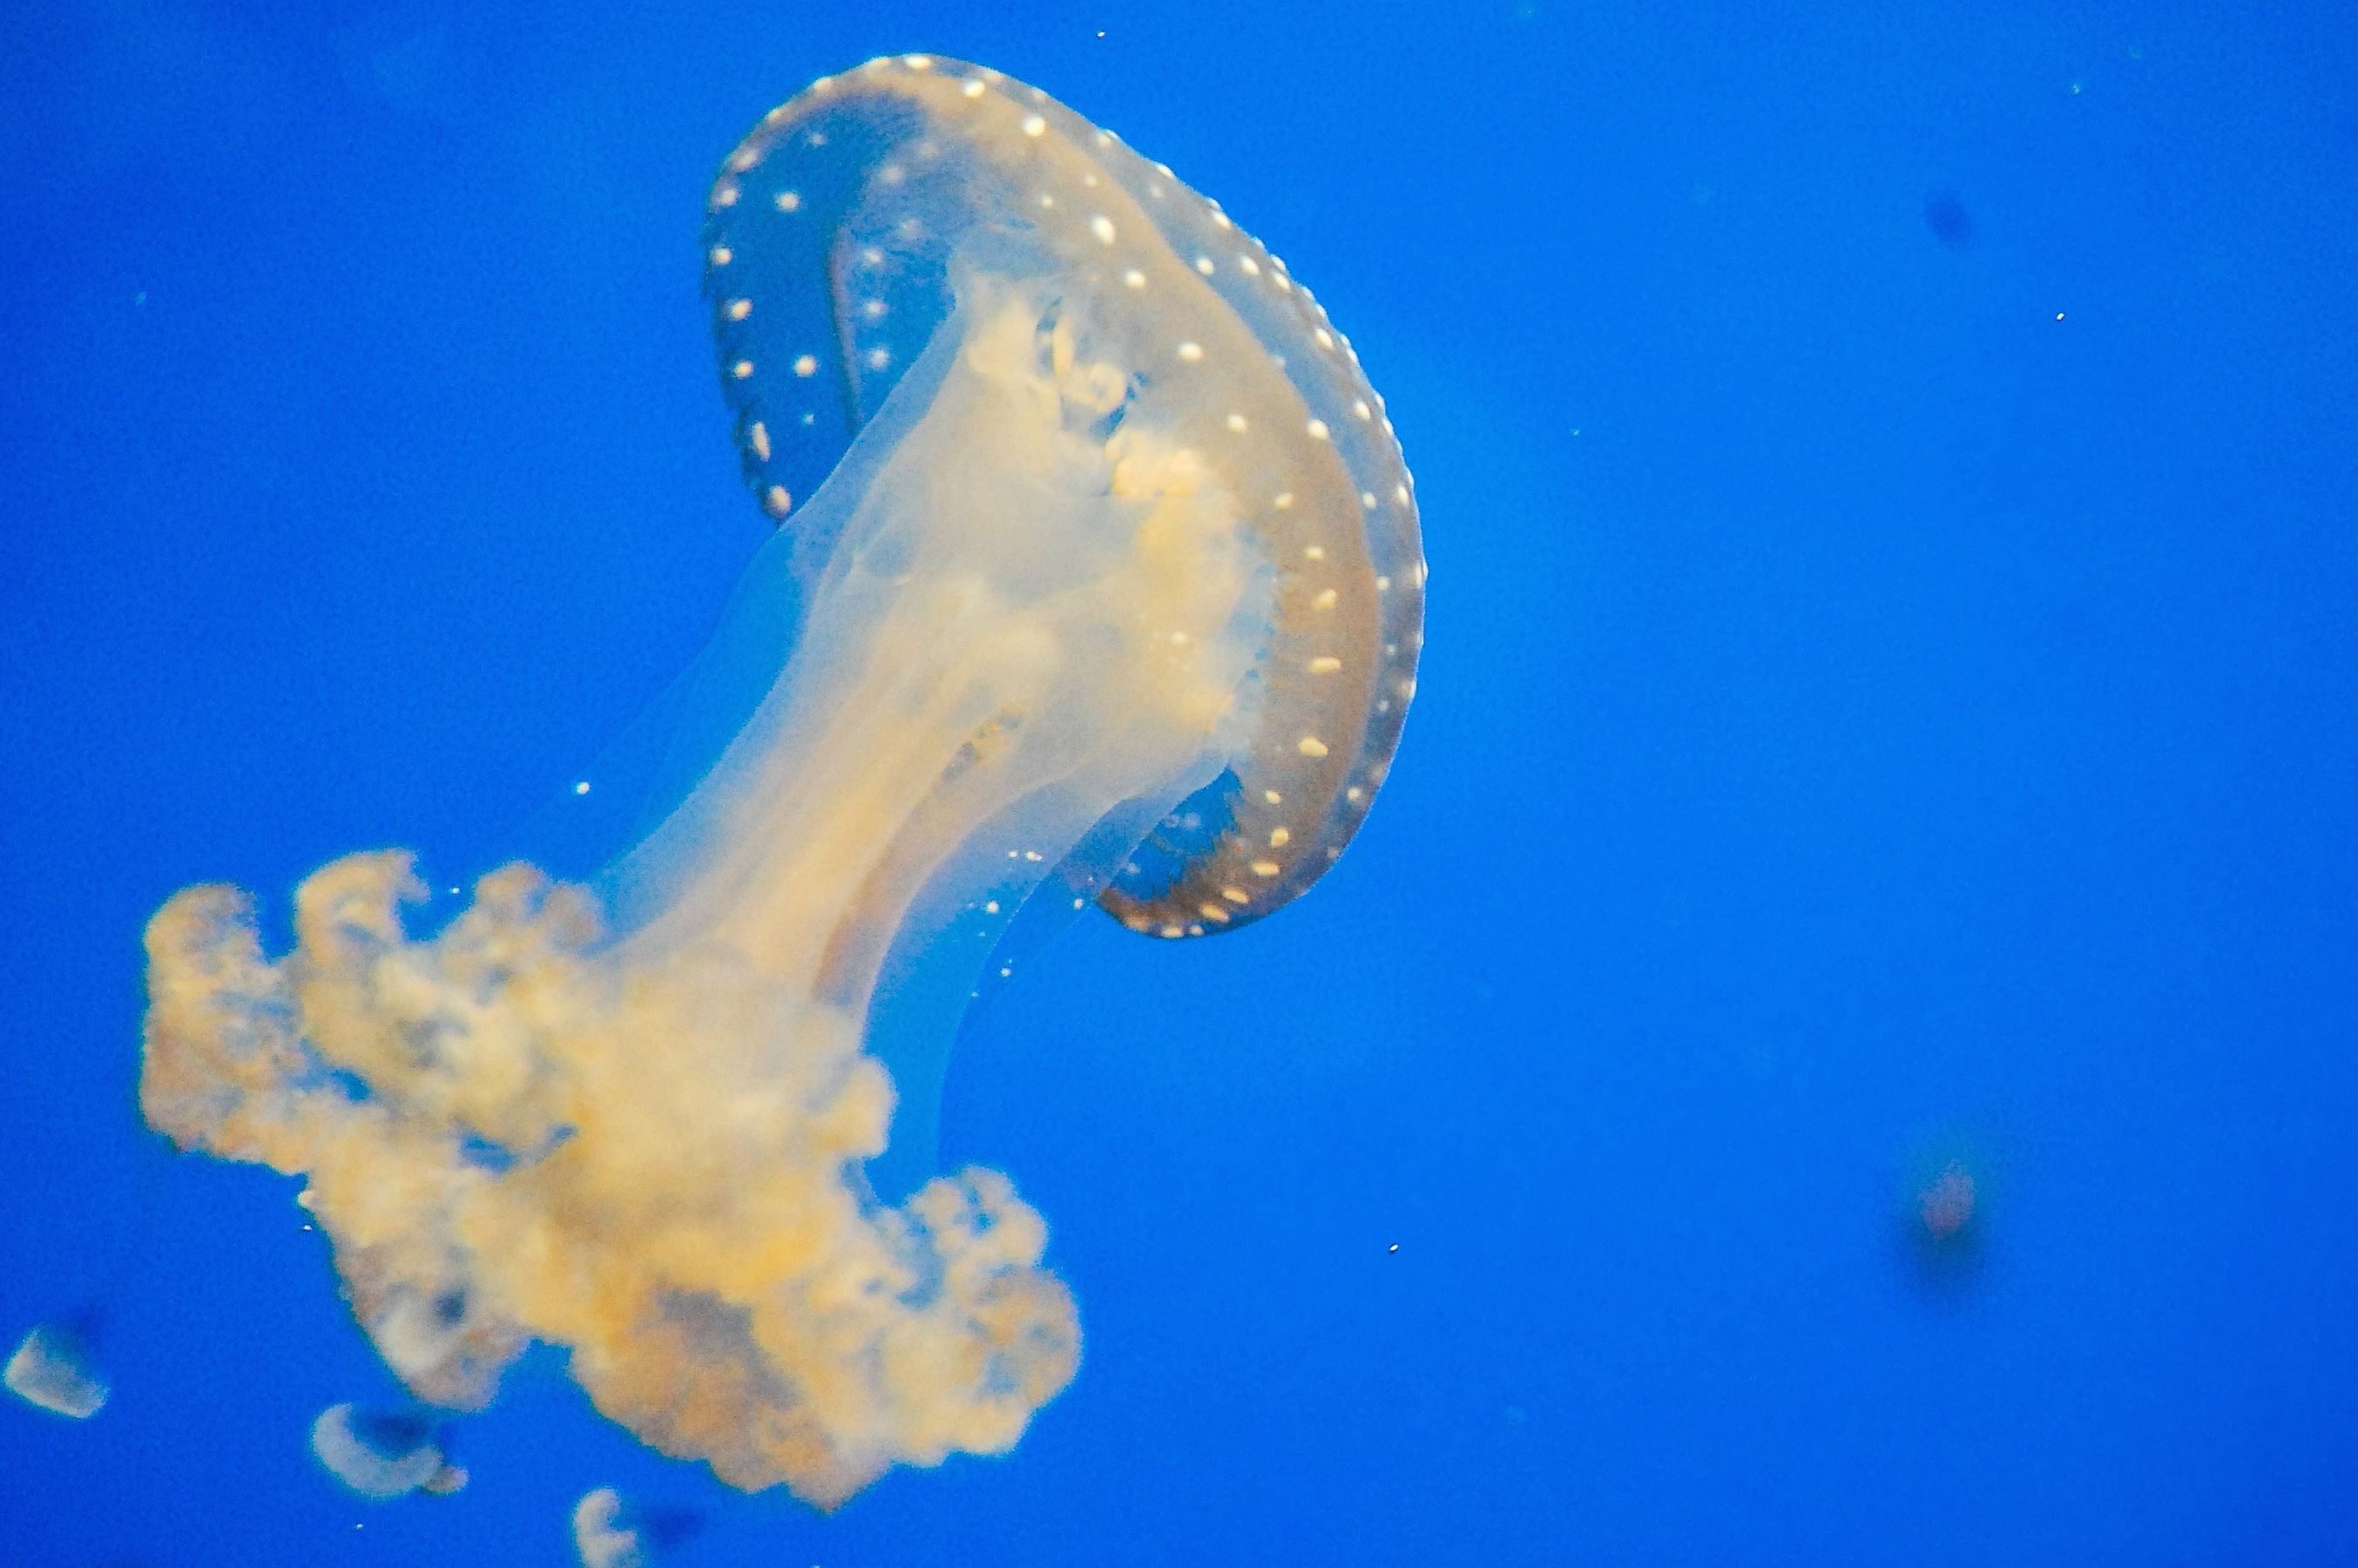 Kostenlose Bild Wirbellose Tier Meer Wasser Unterwasser